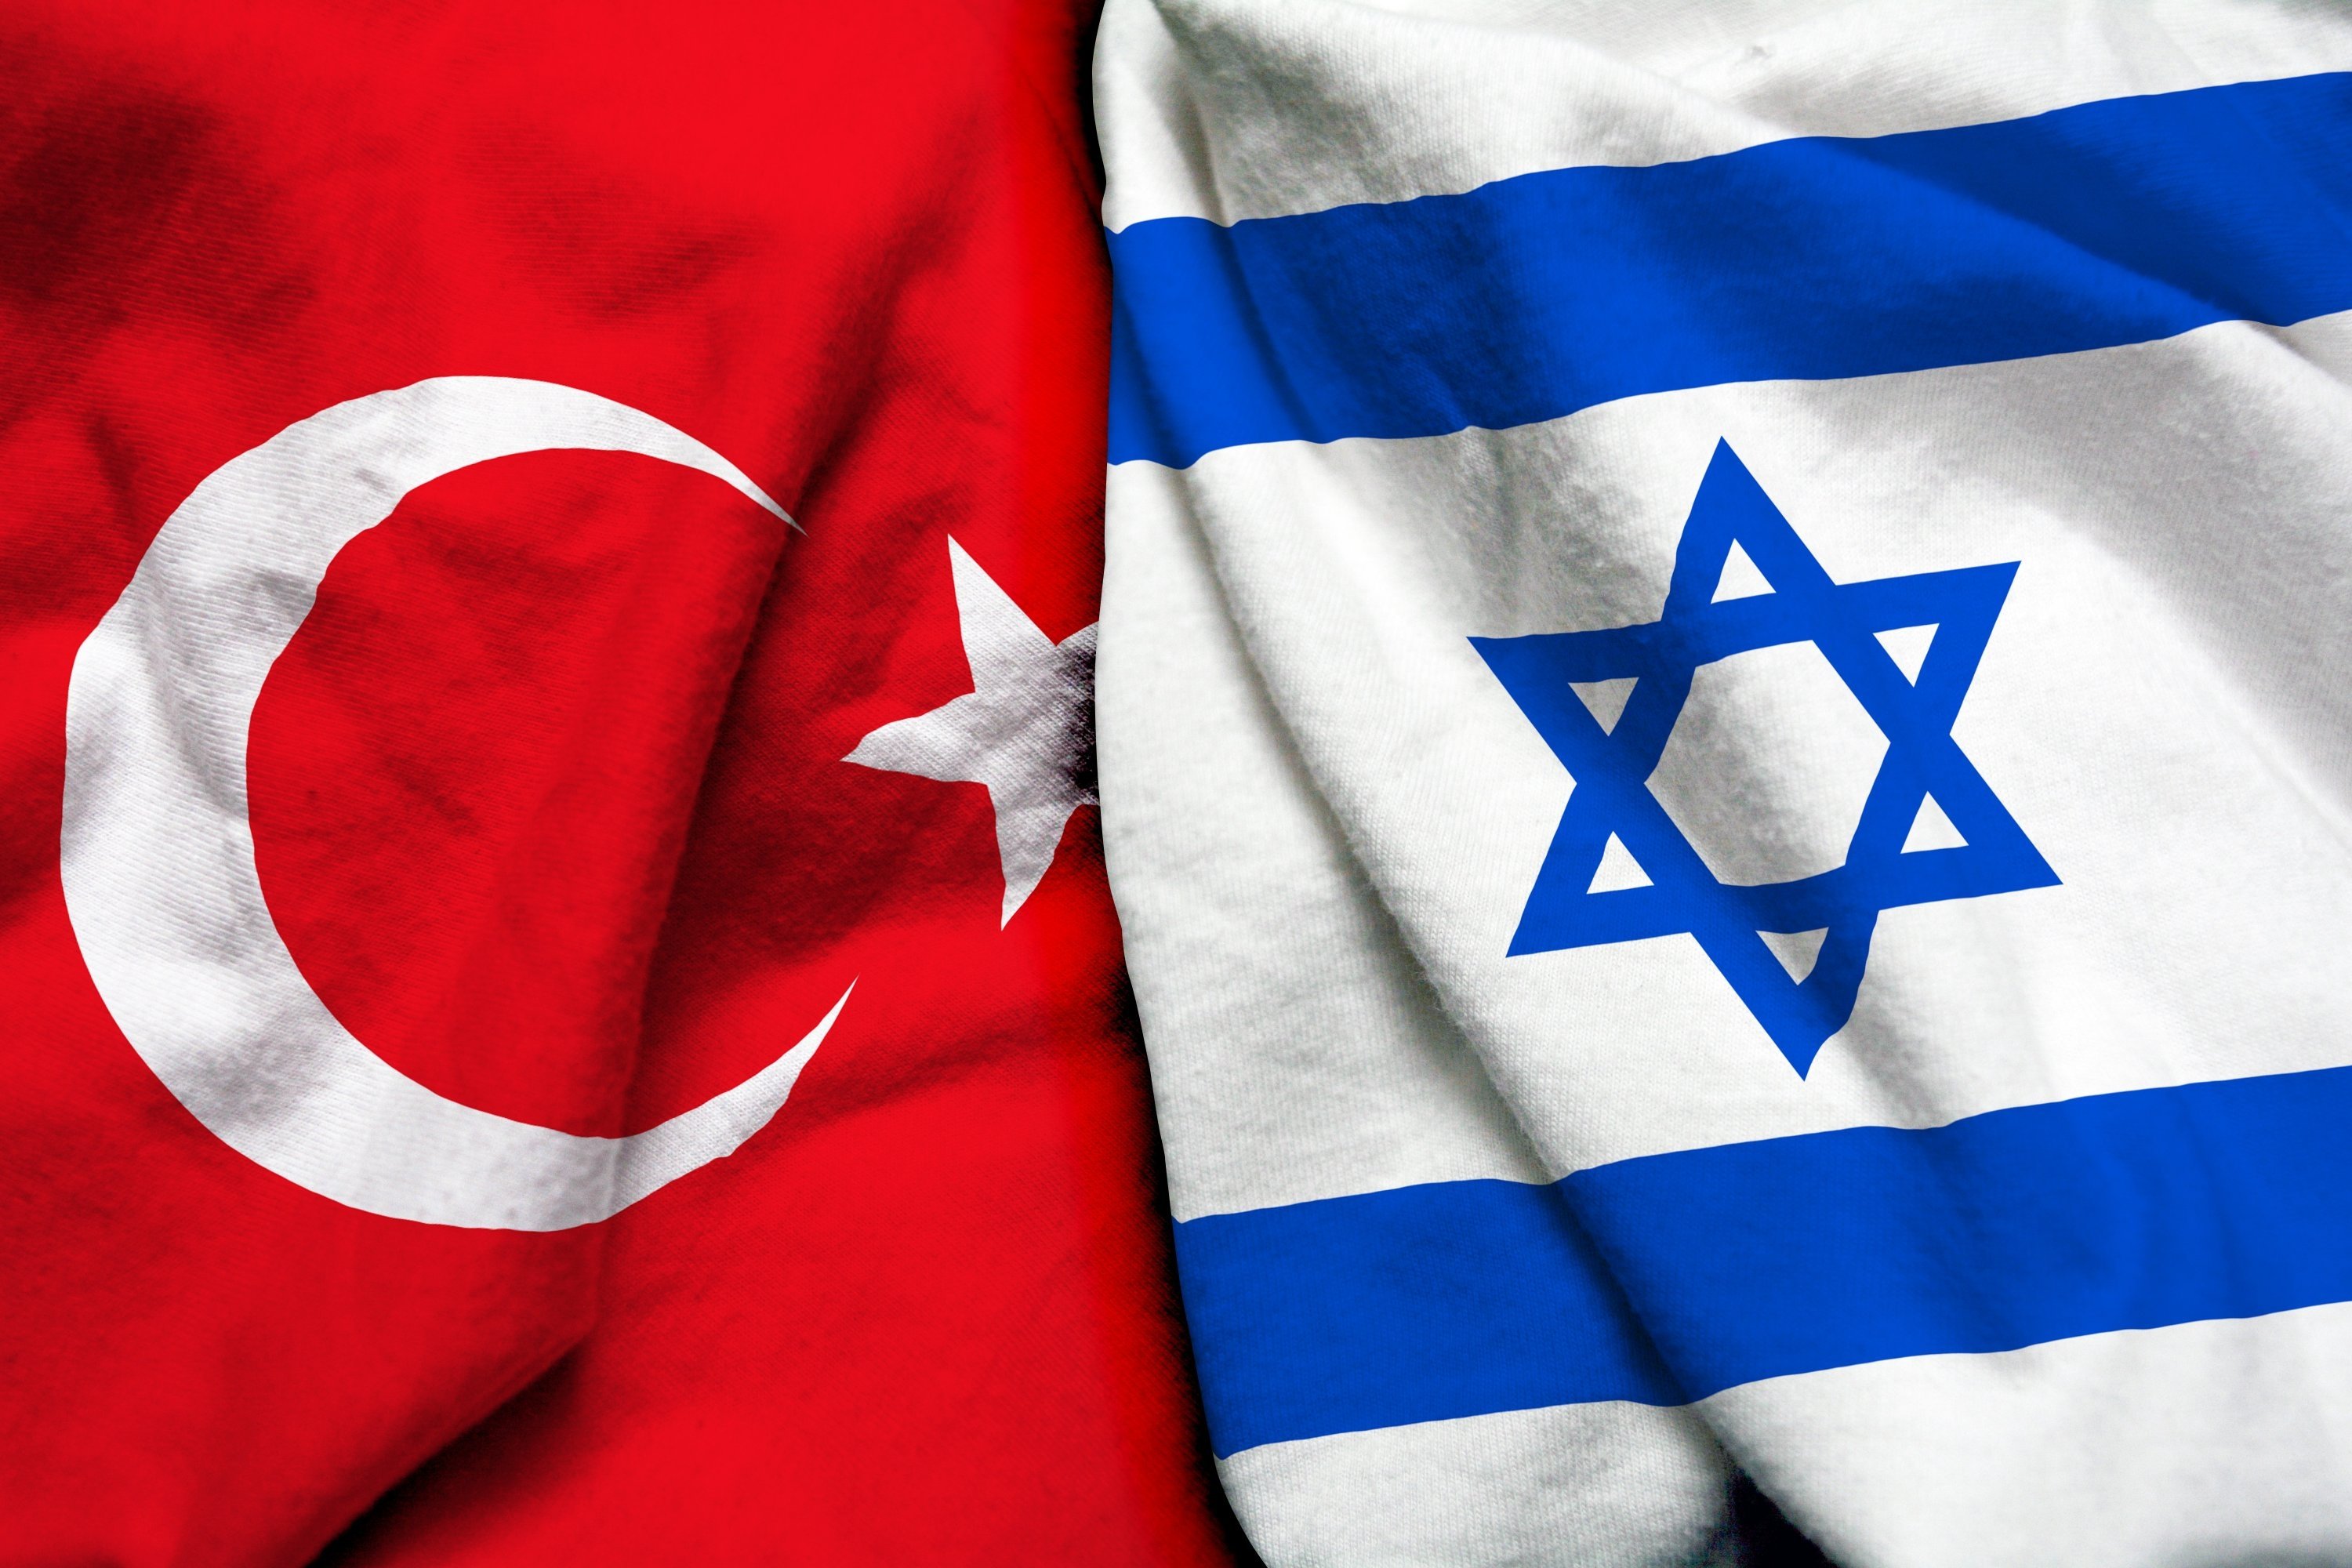 Erdoğan, Herzog discuss Turkey-Israel ties, regional issues | Daily Sabah